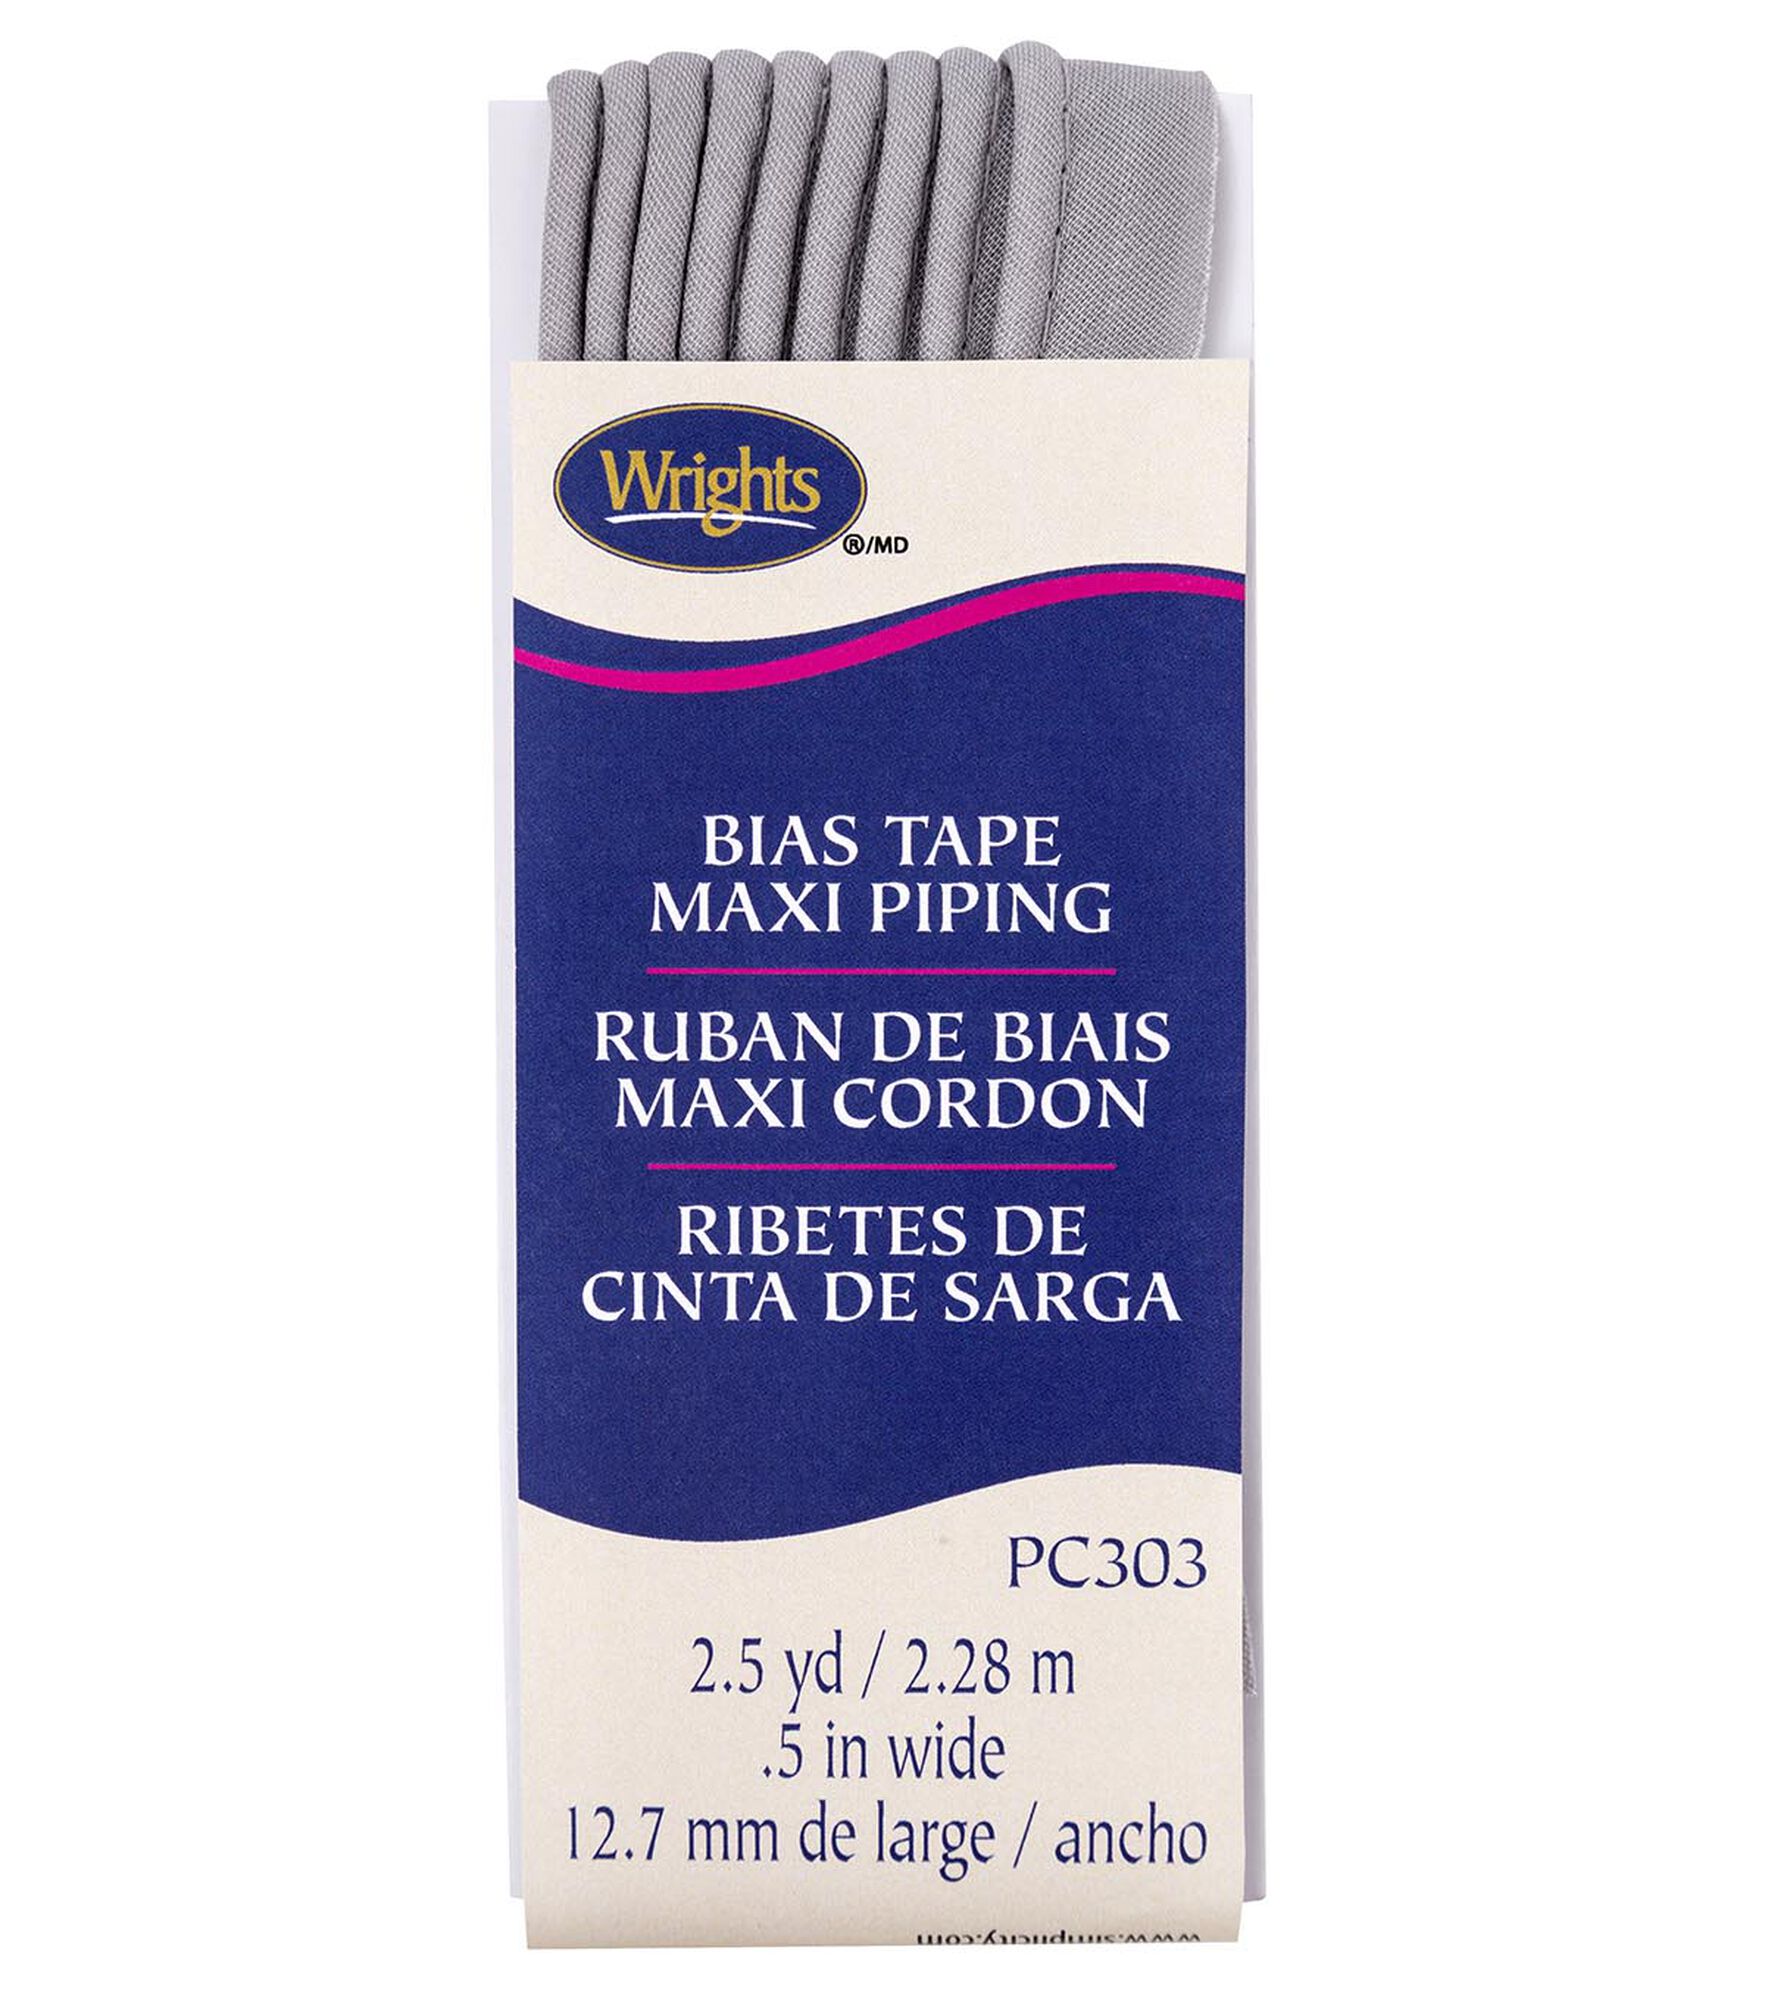 Wrights 1/2" x 2.5yd Maxi Piping Tape, Medium Gray, hi-res